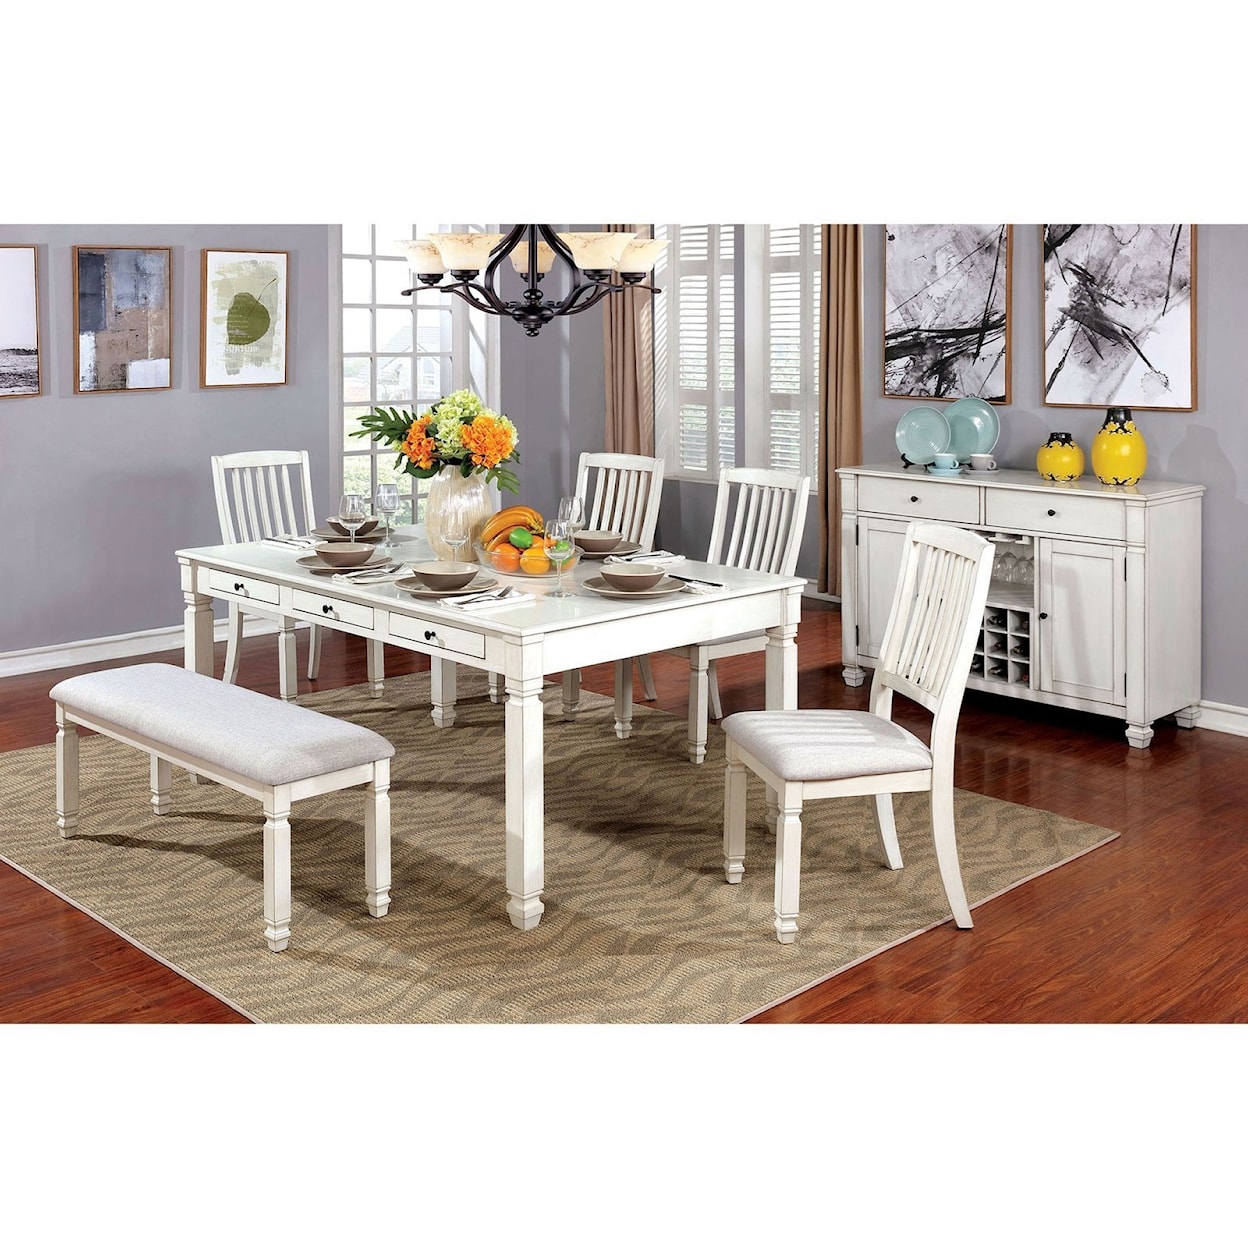 Furniture of America Kaliyah Dining Table